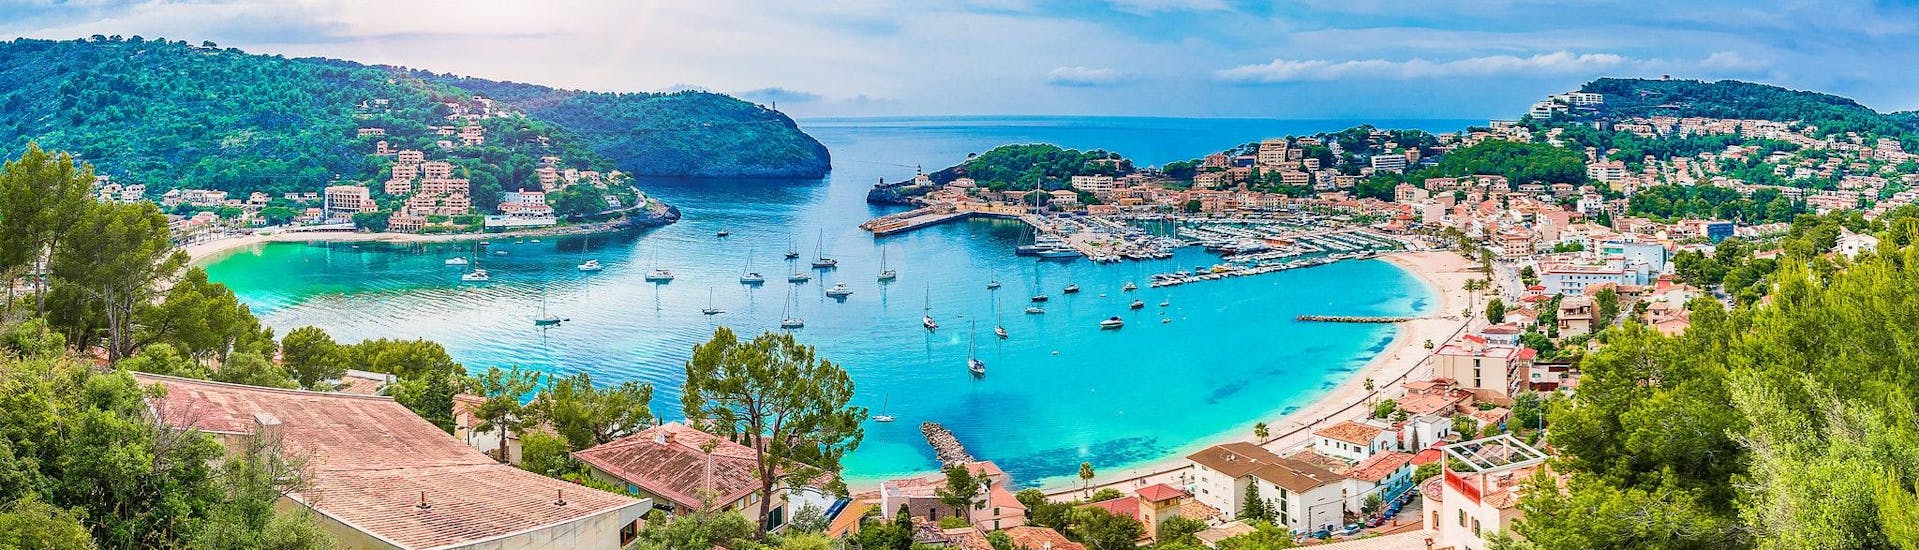 Ein wunderschöner Blick auf Port de Sollér, von wo aus man herrliche Bootstouren entlang der Westküste Mallorcas unternehmen kann.